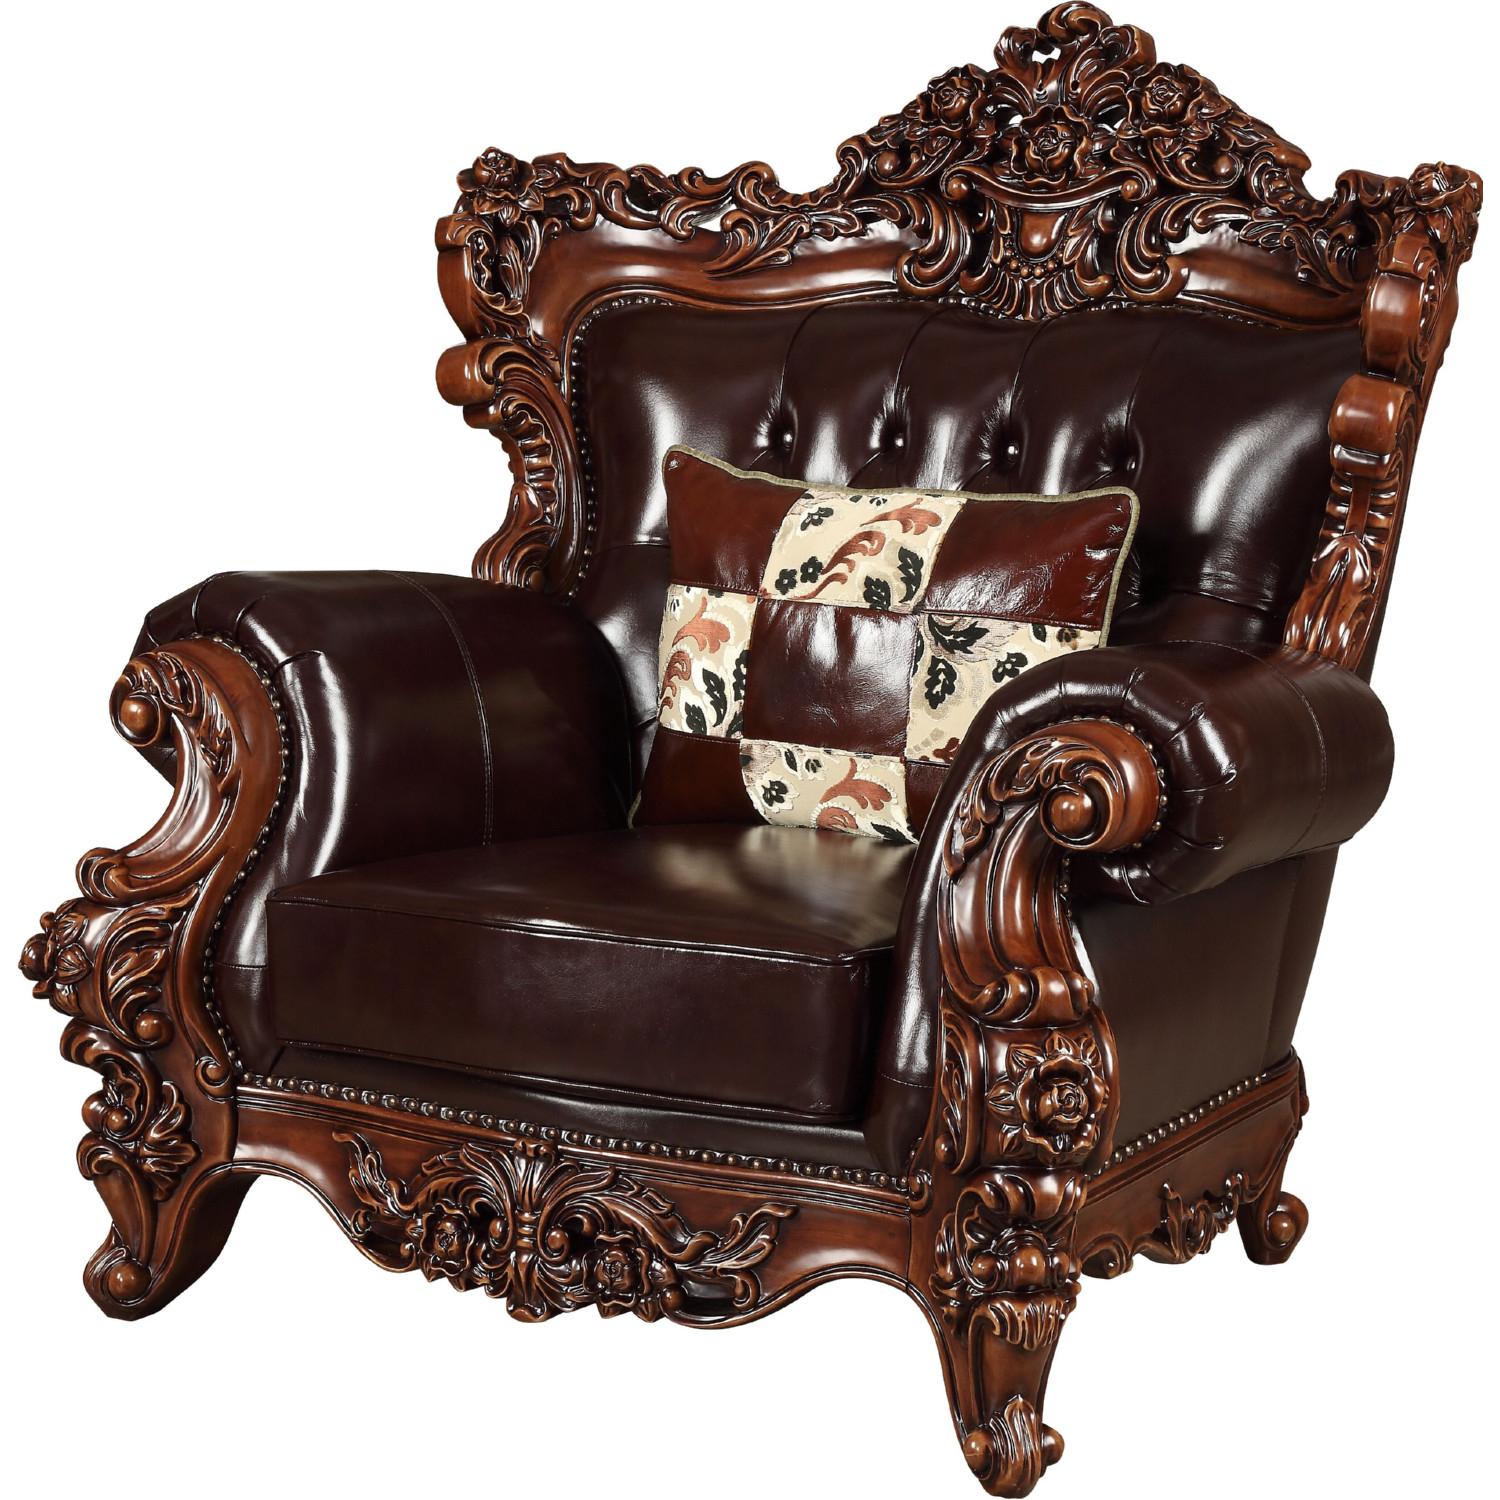 Classic, Traditional Arm Chair Forsythia 53072 53072-Forsythia in Dark Walnut, Espresso Leather